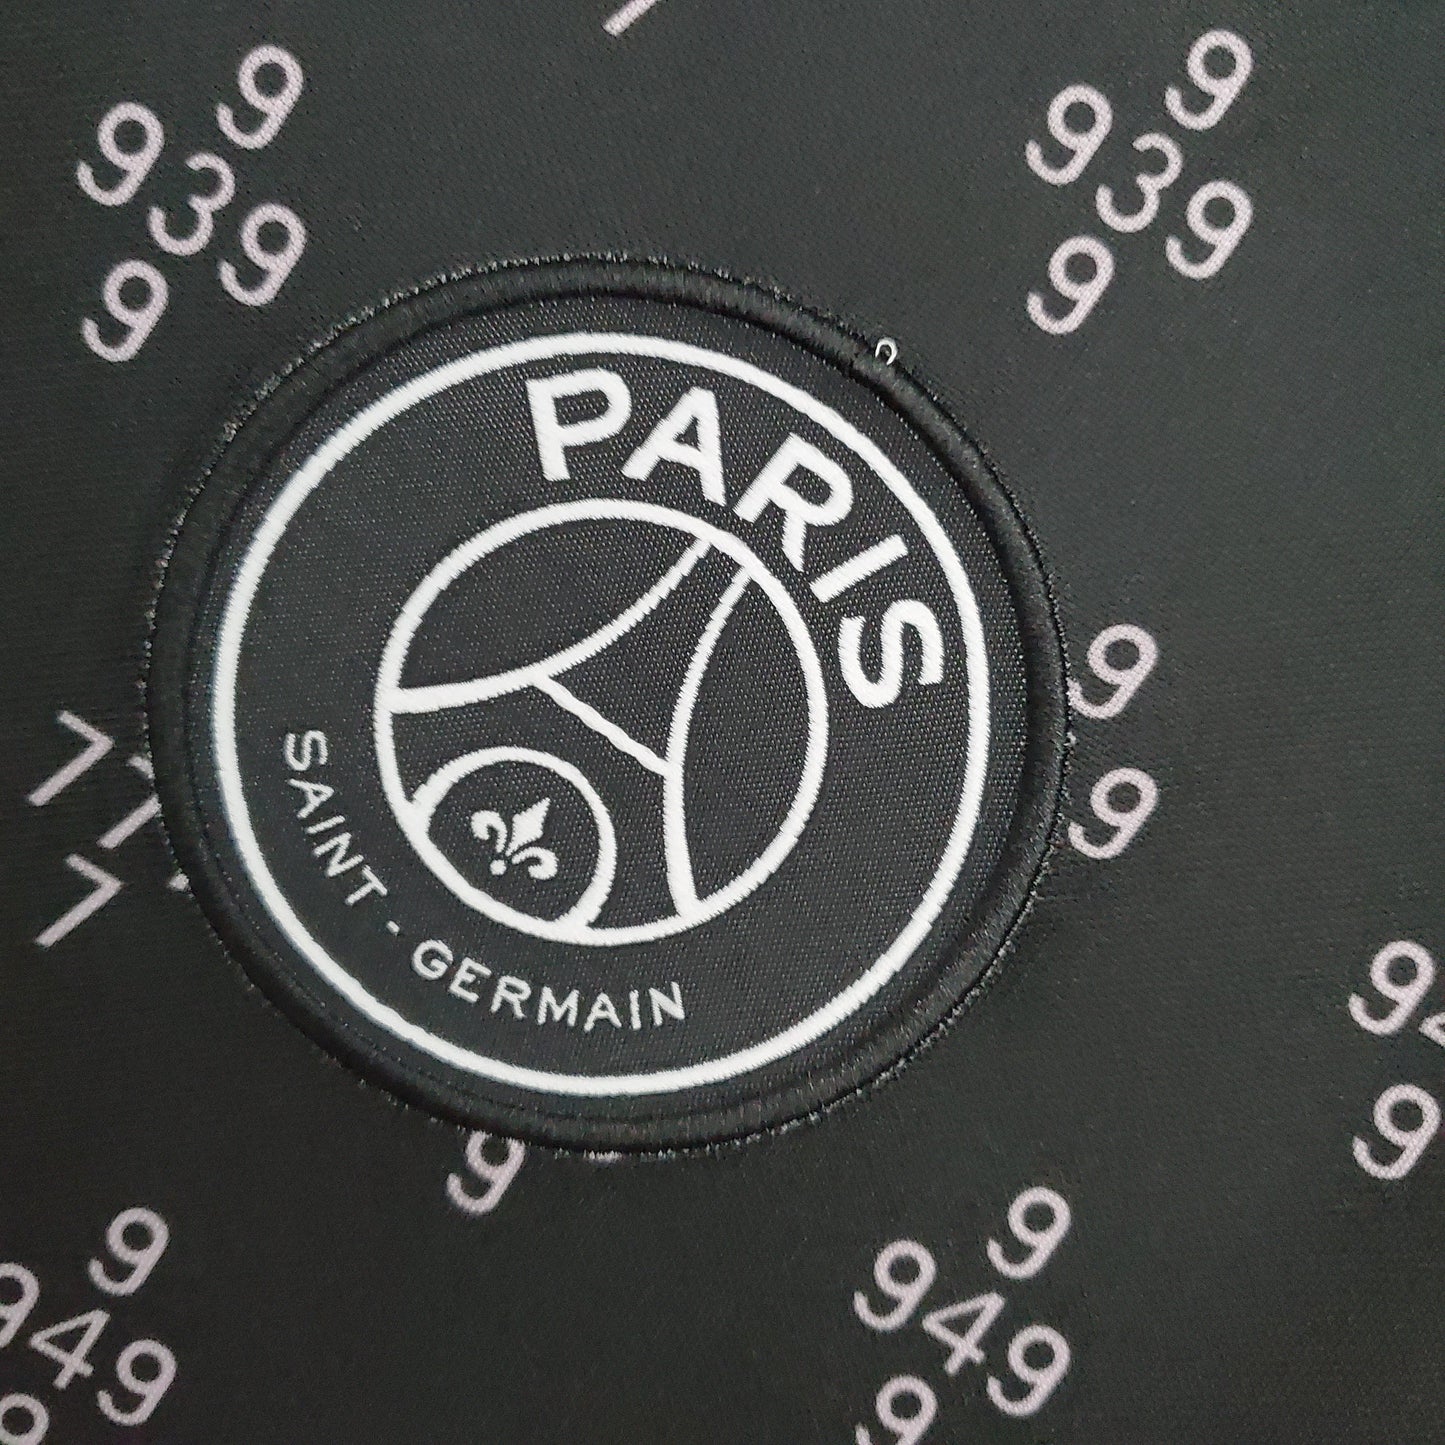 2021/2022 Psg Paris Saint-Germain Training Wear Black